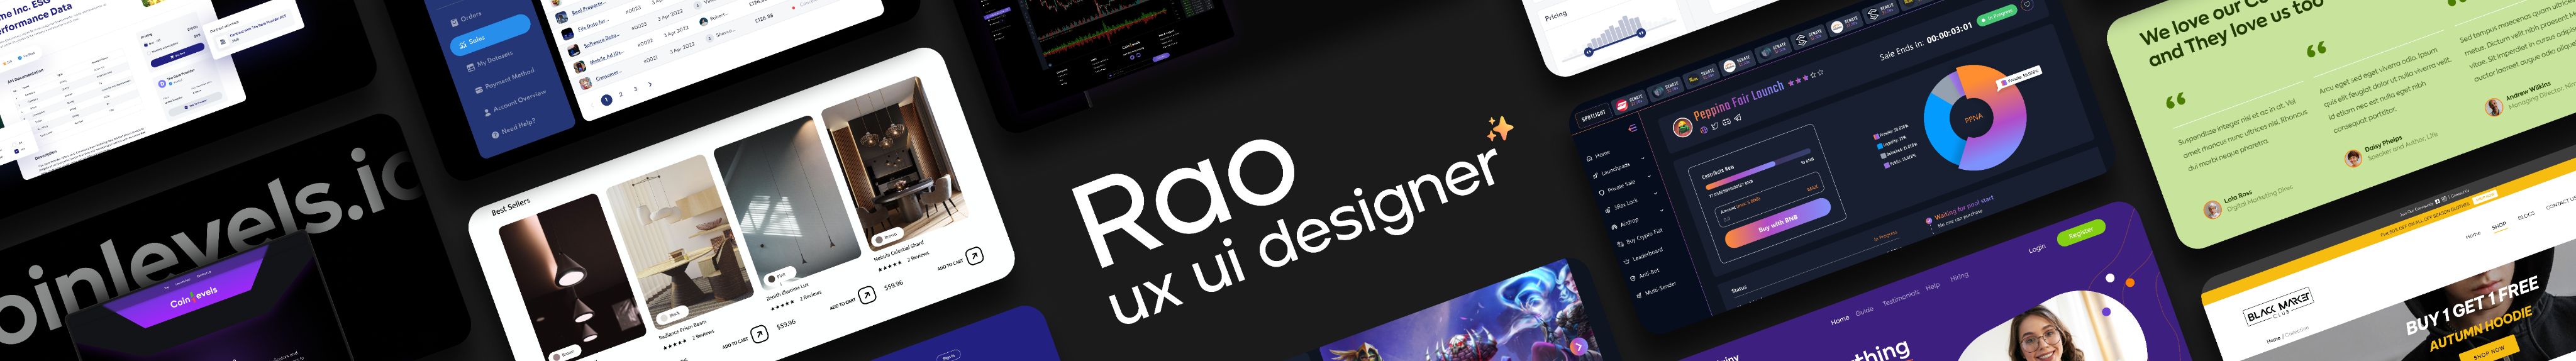 UX UI Designer - RAO's profile banner